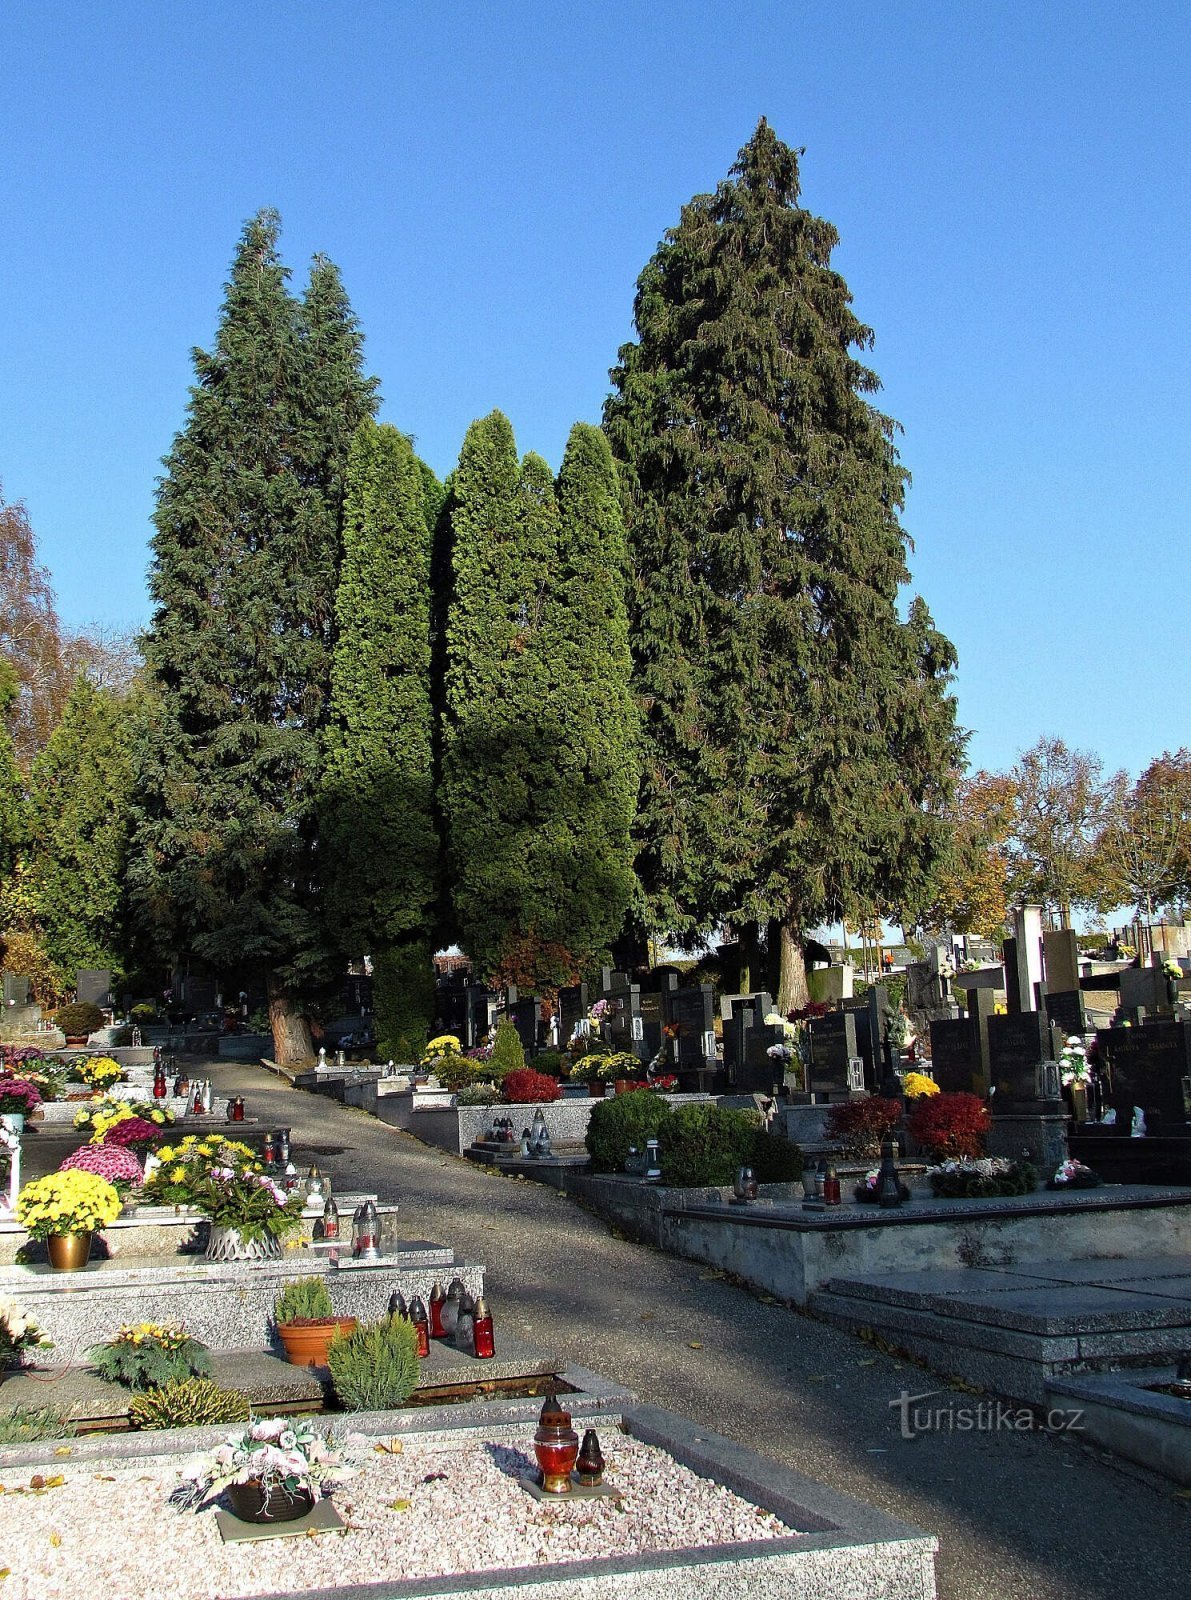 Slavičín Cemetery and Memorial to American Airmen